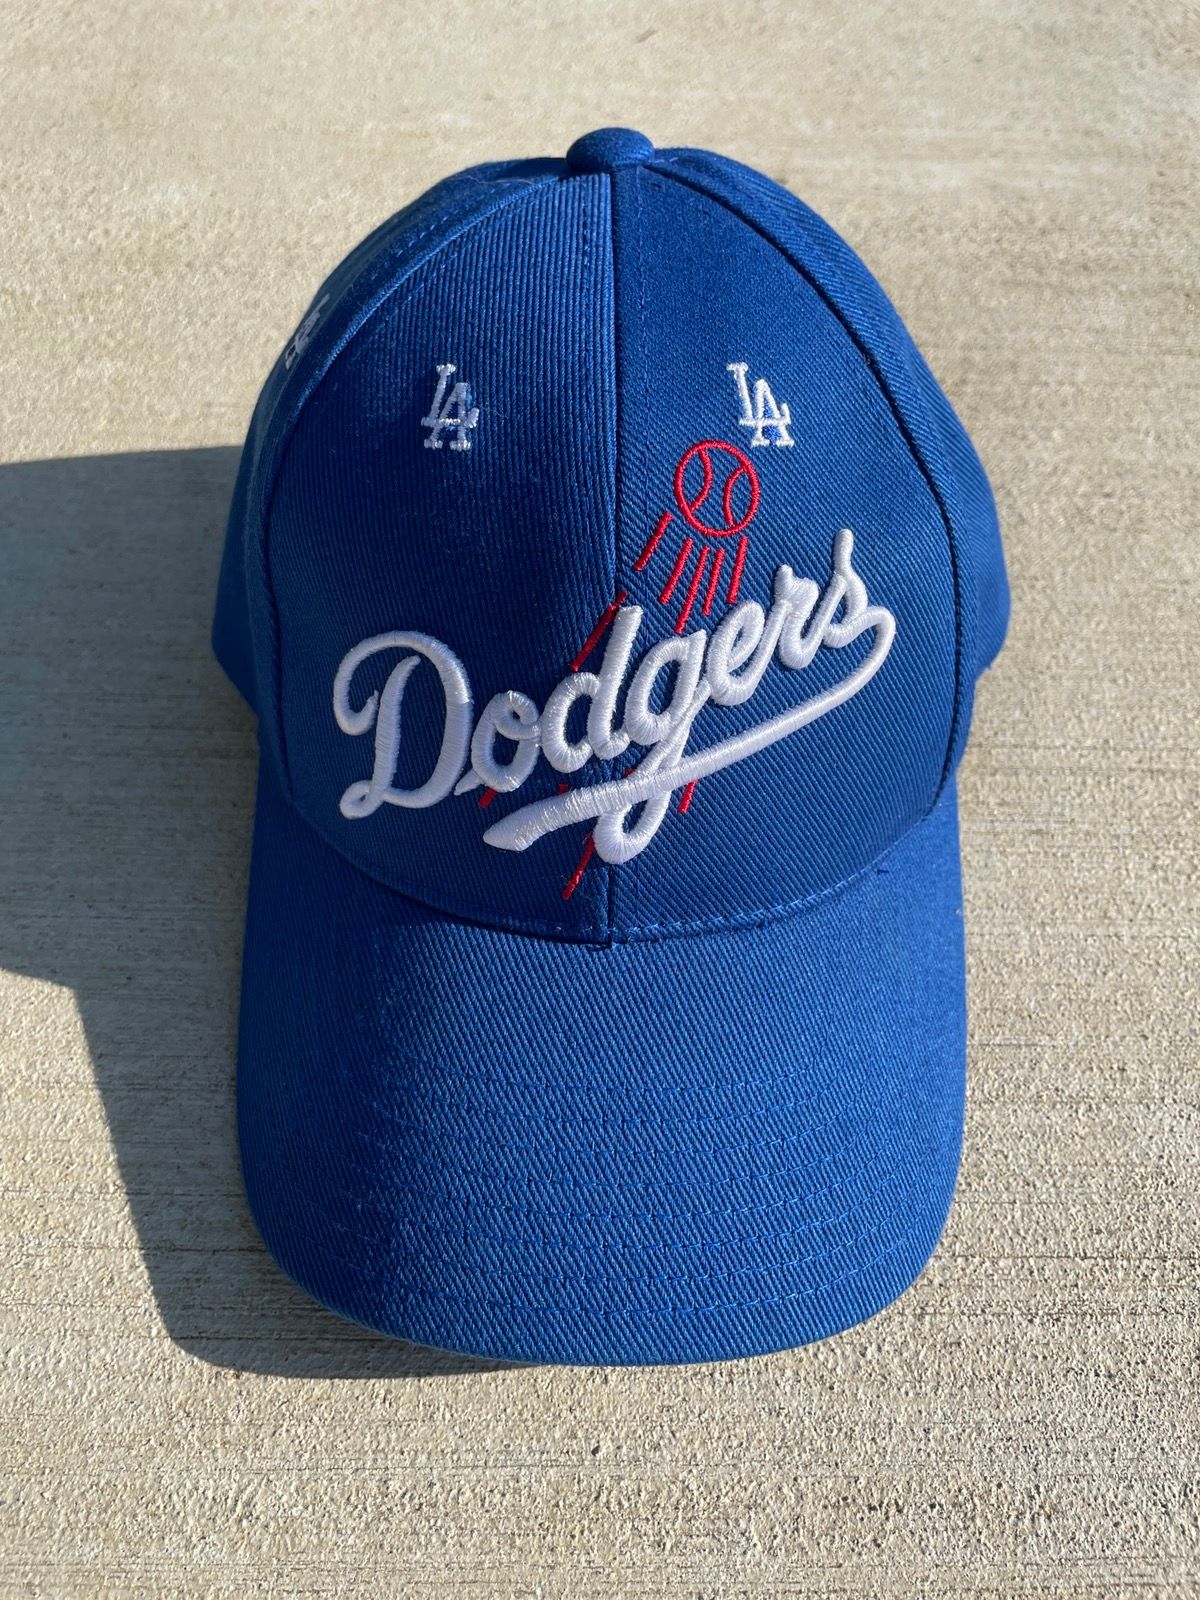 Vintage Vintage LA Dodgers hat | Grailed